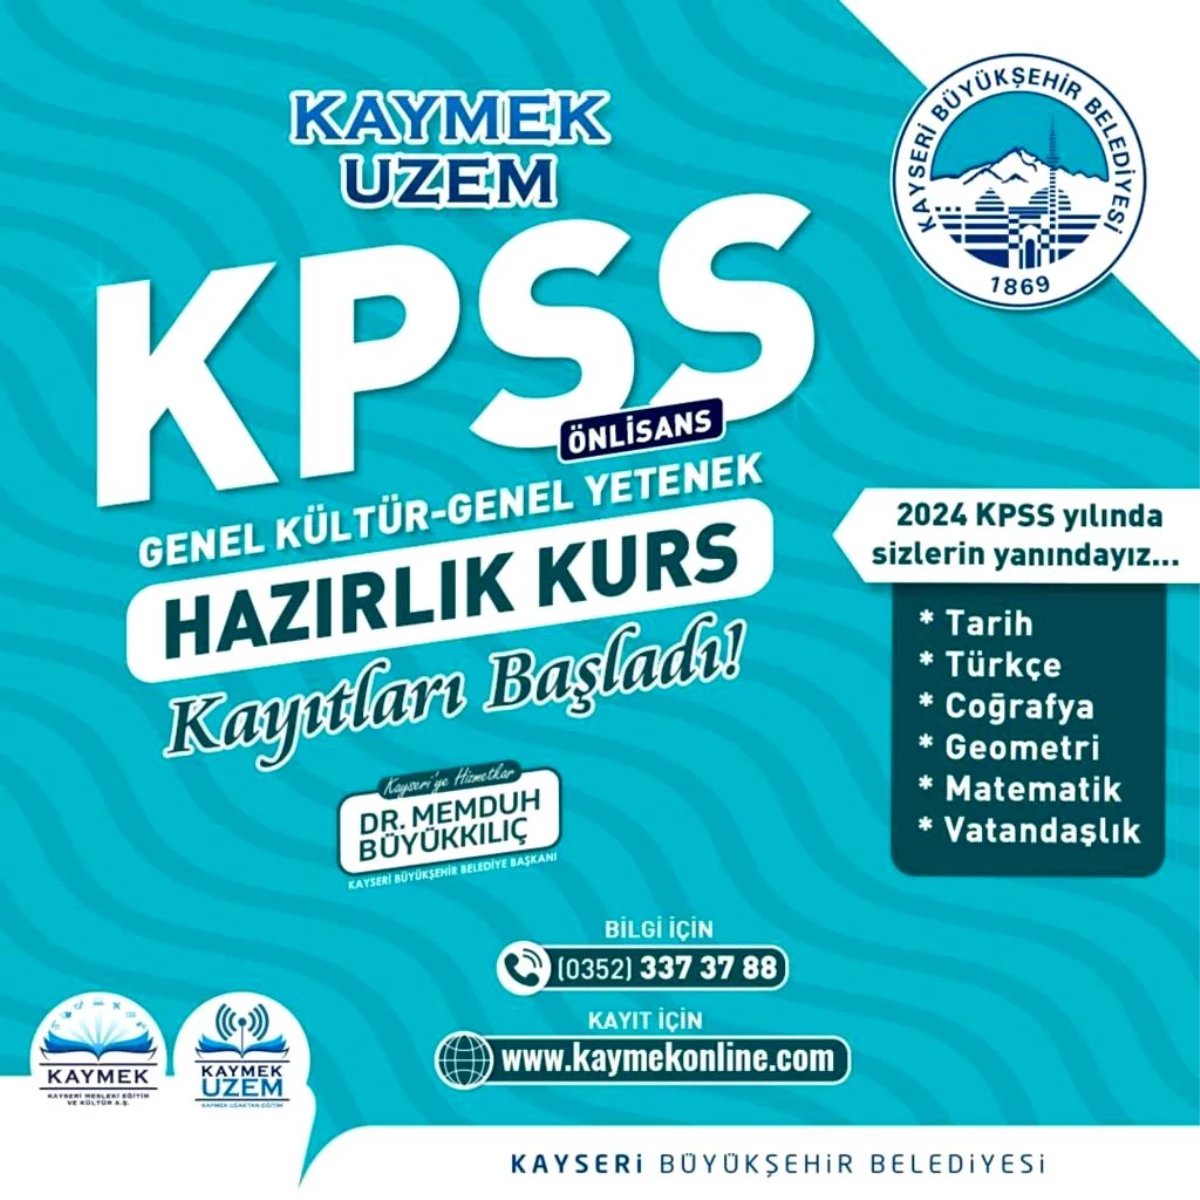 Kayseri Büyükşehir Belediyesi KPSS Kurs Kayıtlarını Başlattı